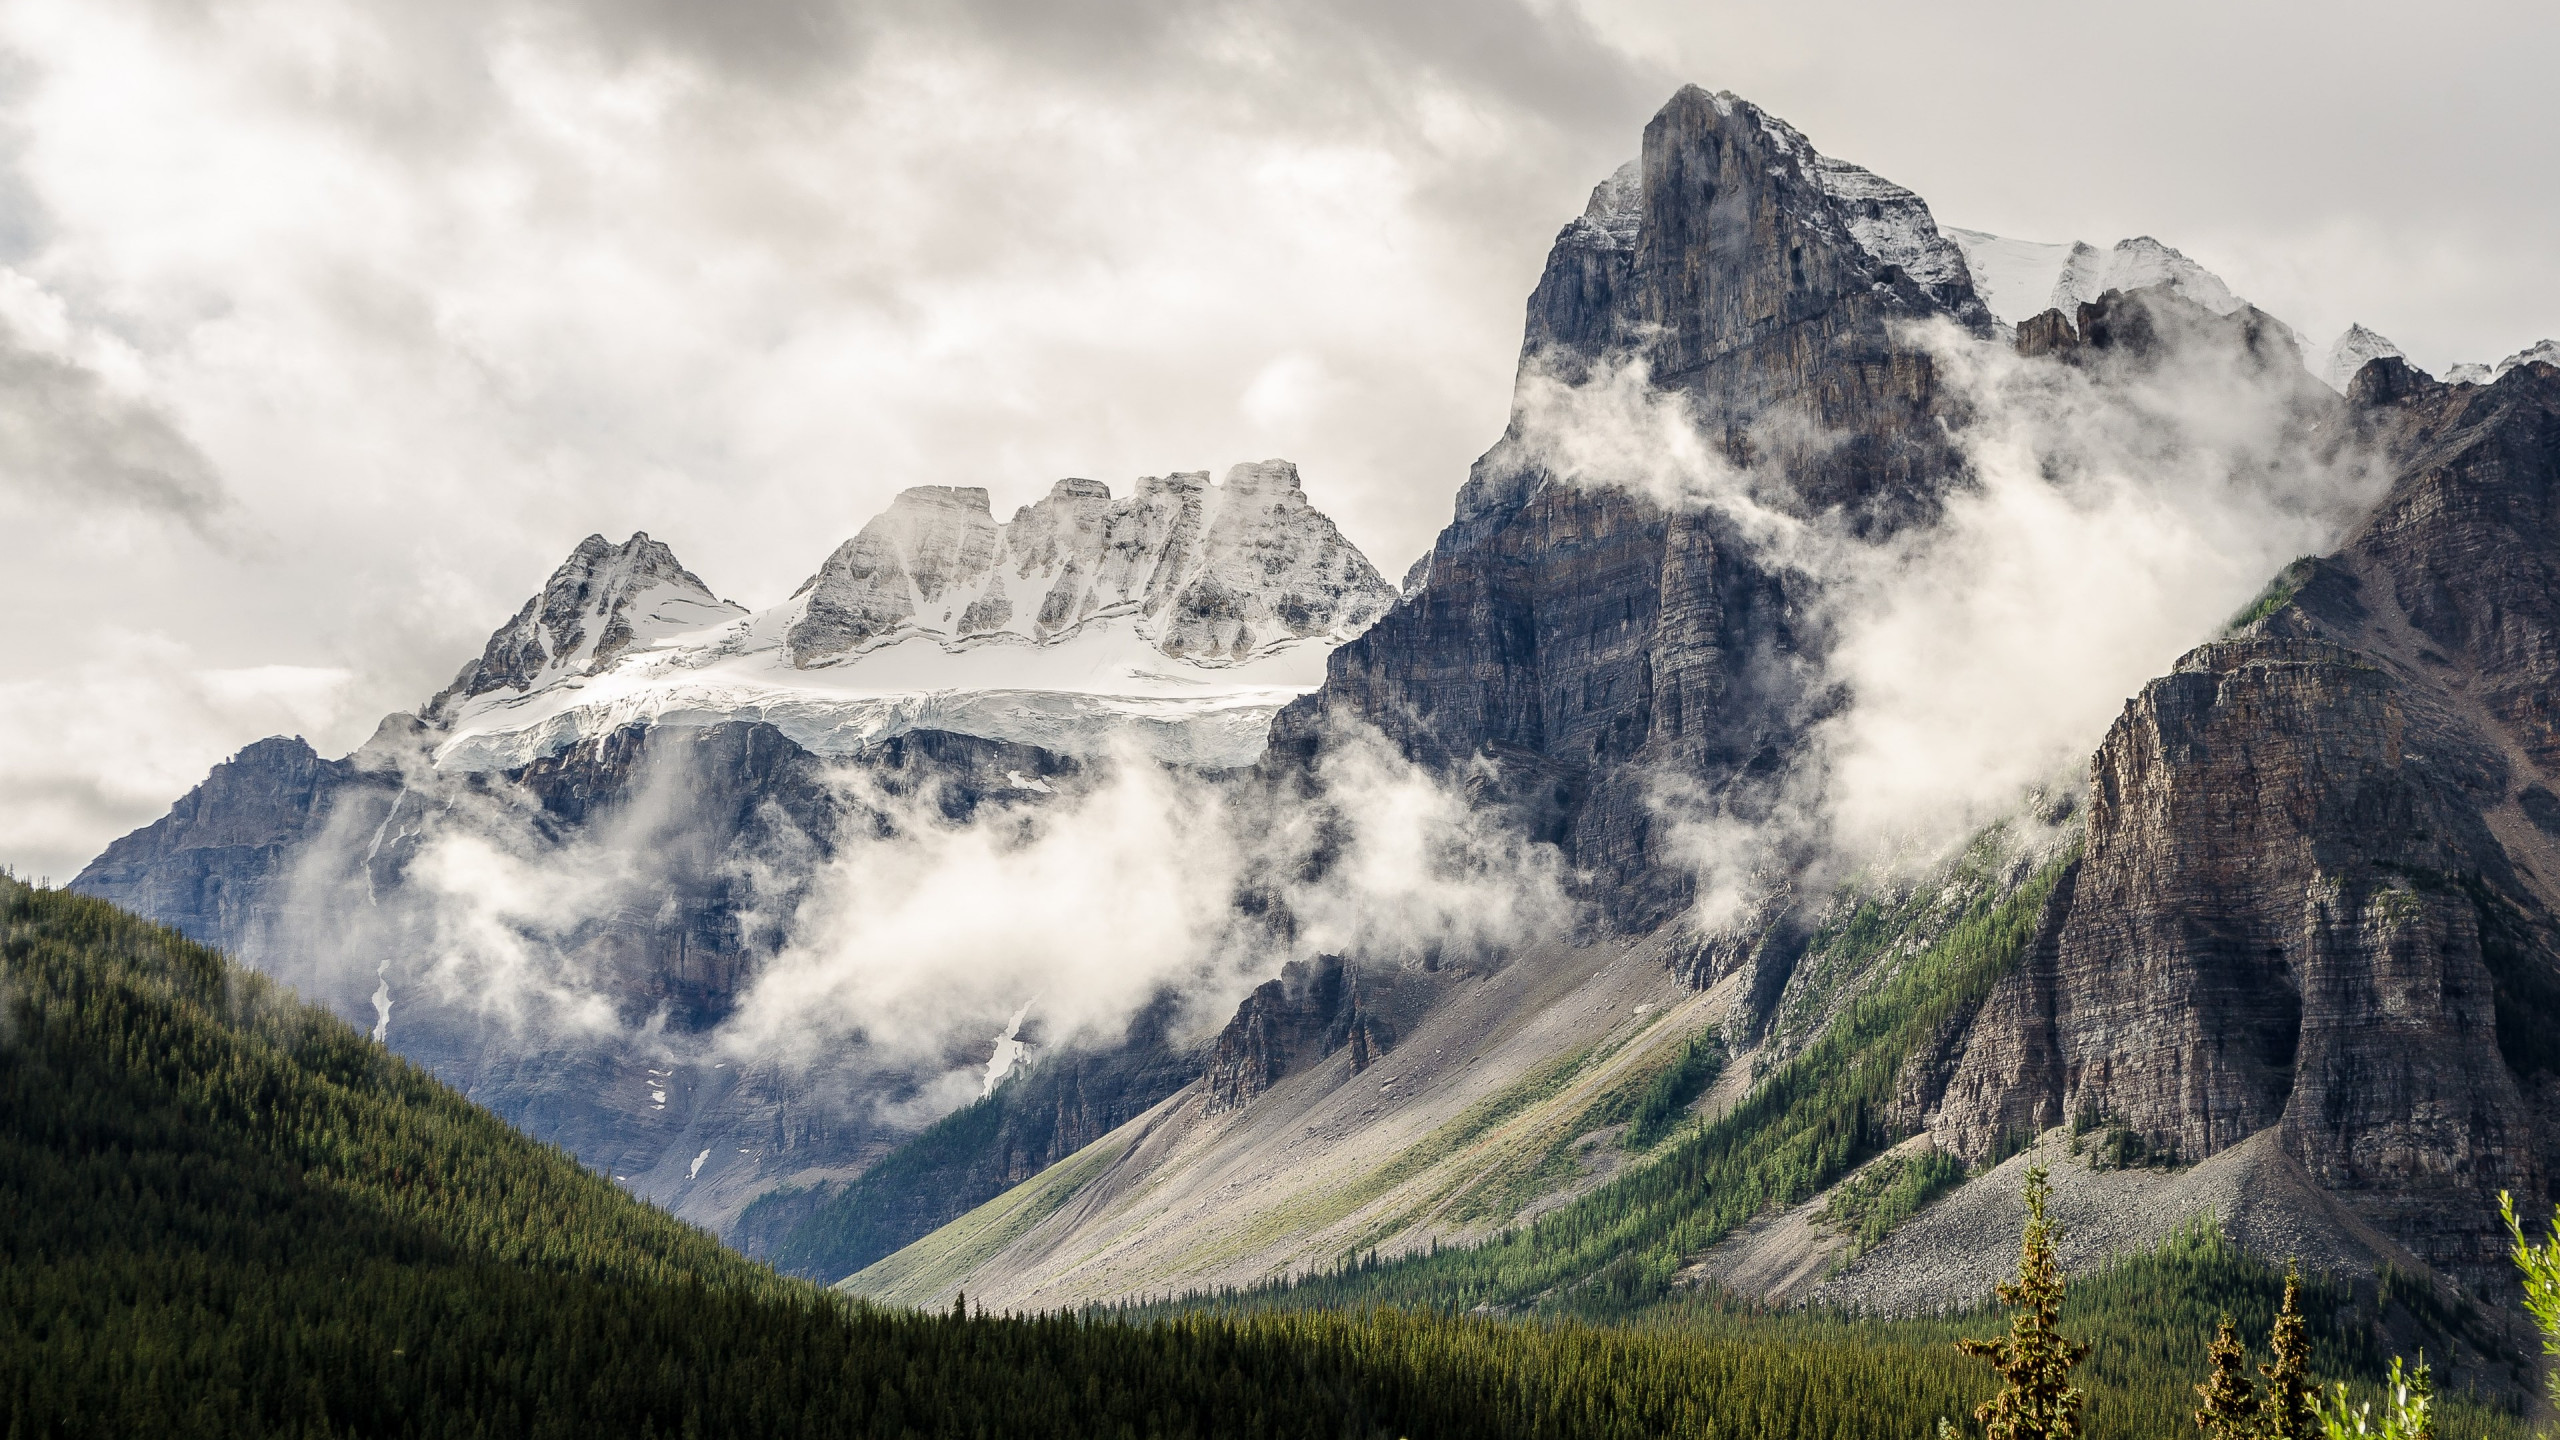 Alberta, Canada, natural landscape wallpaper 2560x1440